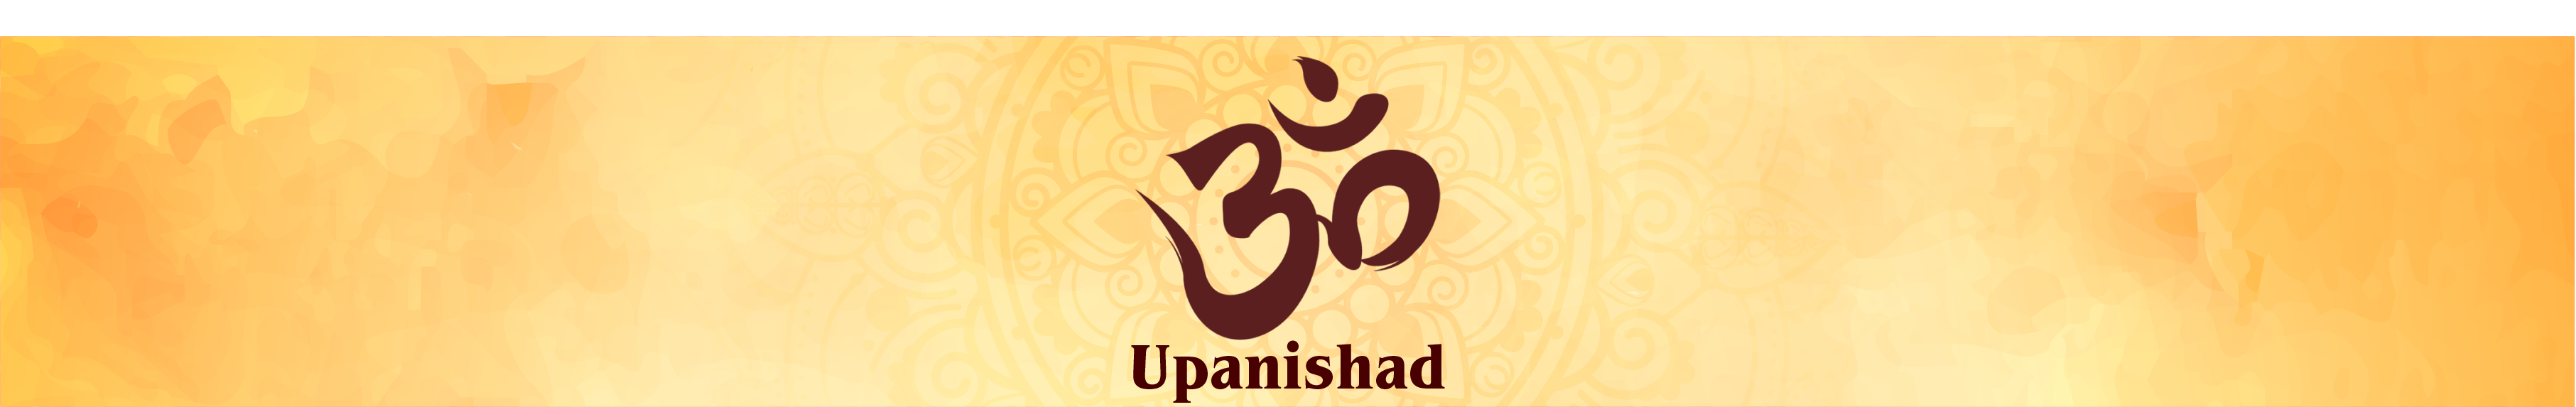 Upanishads and More